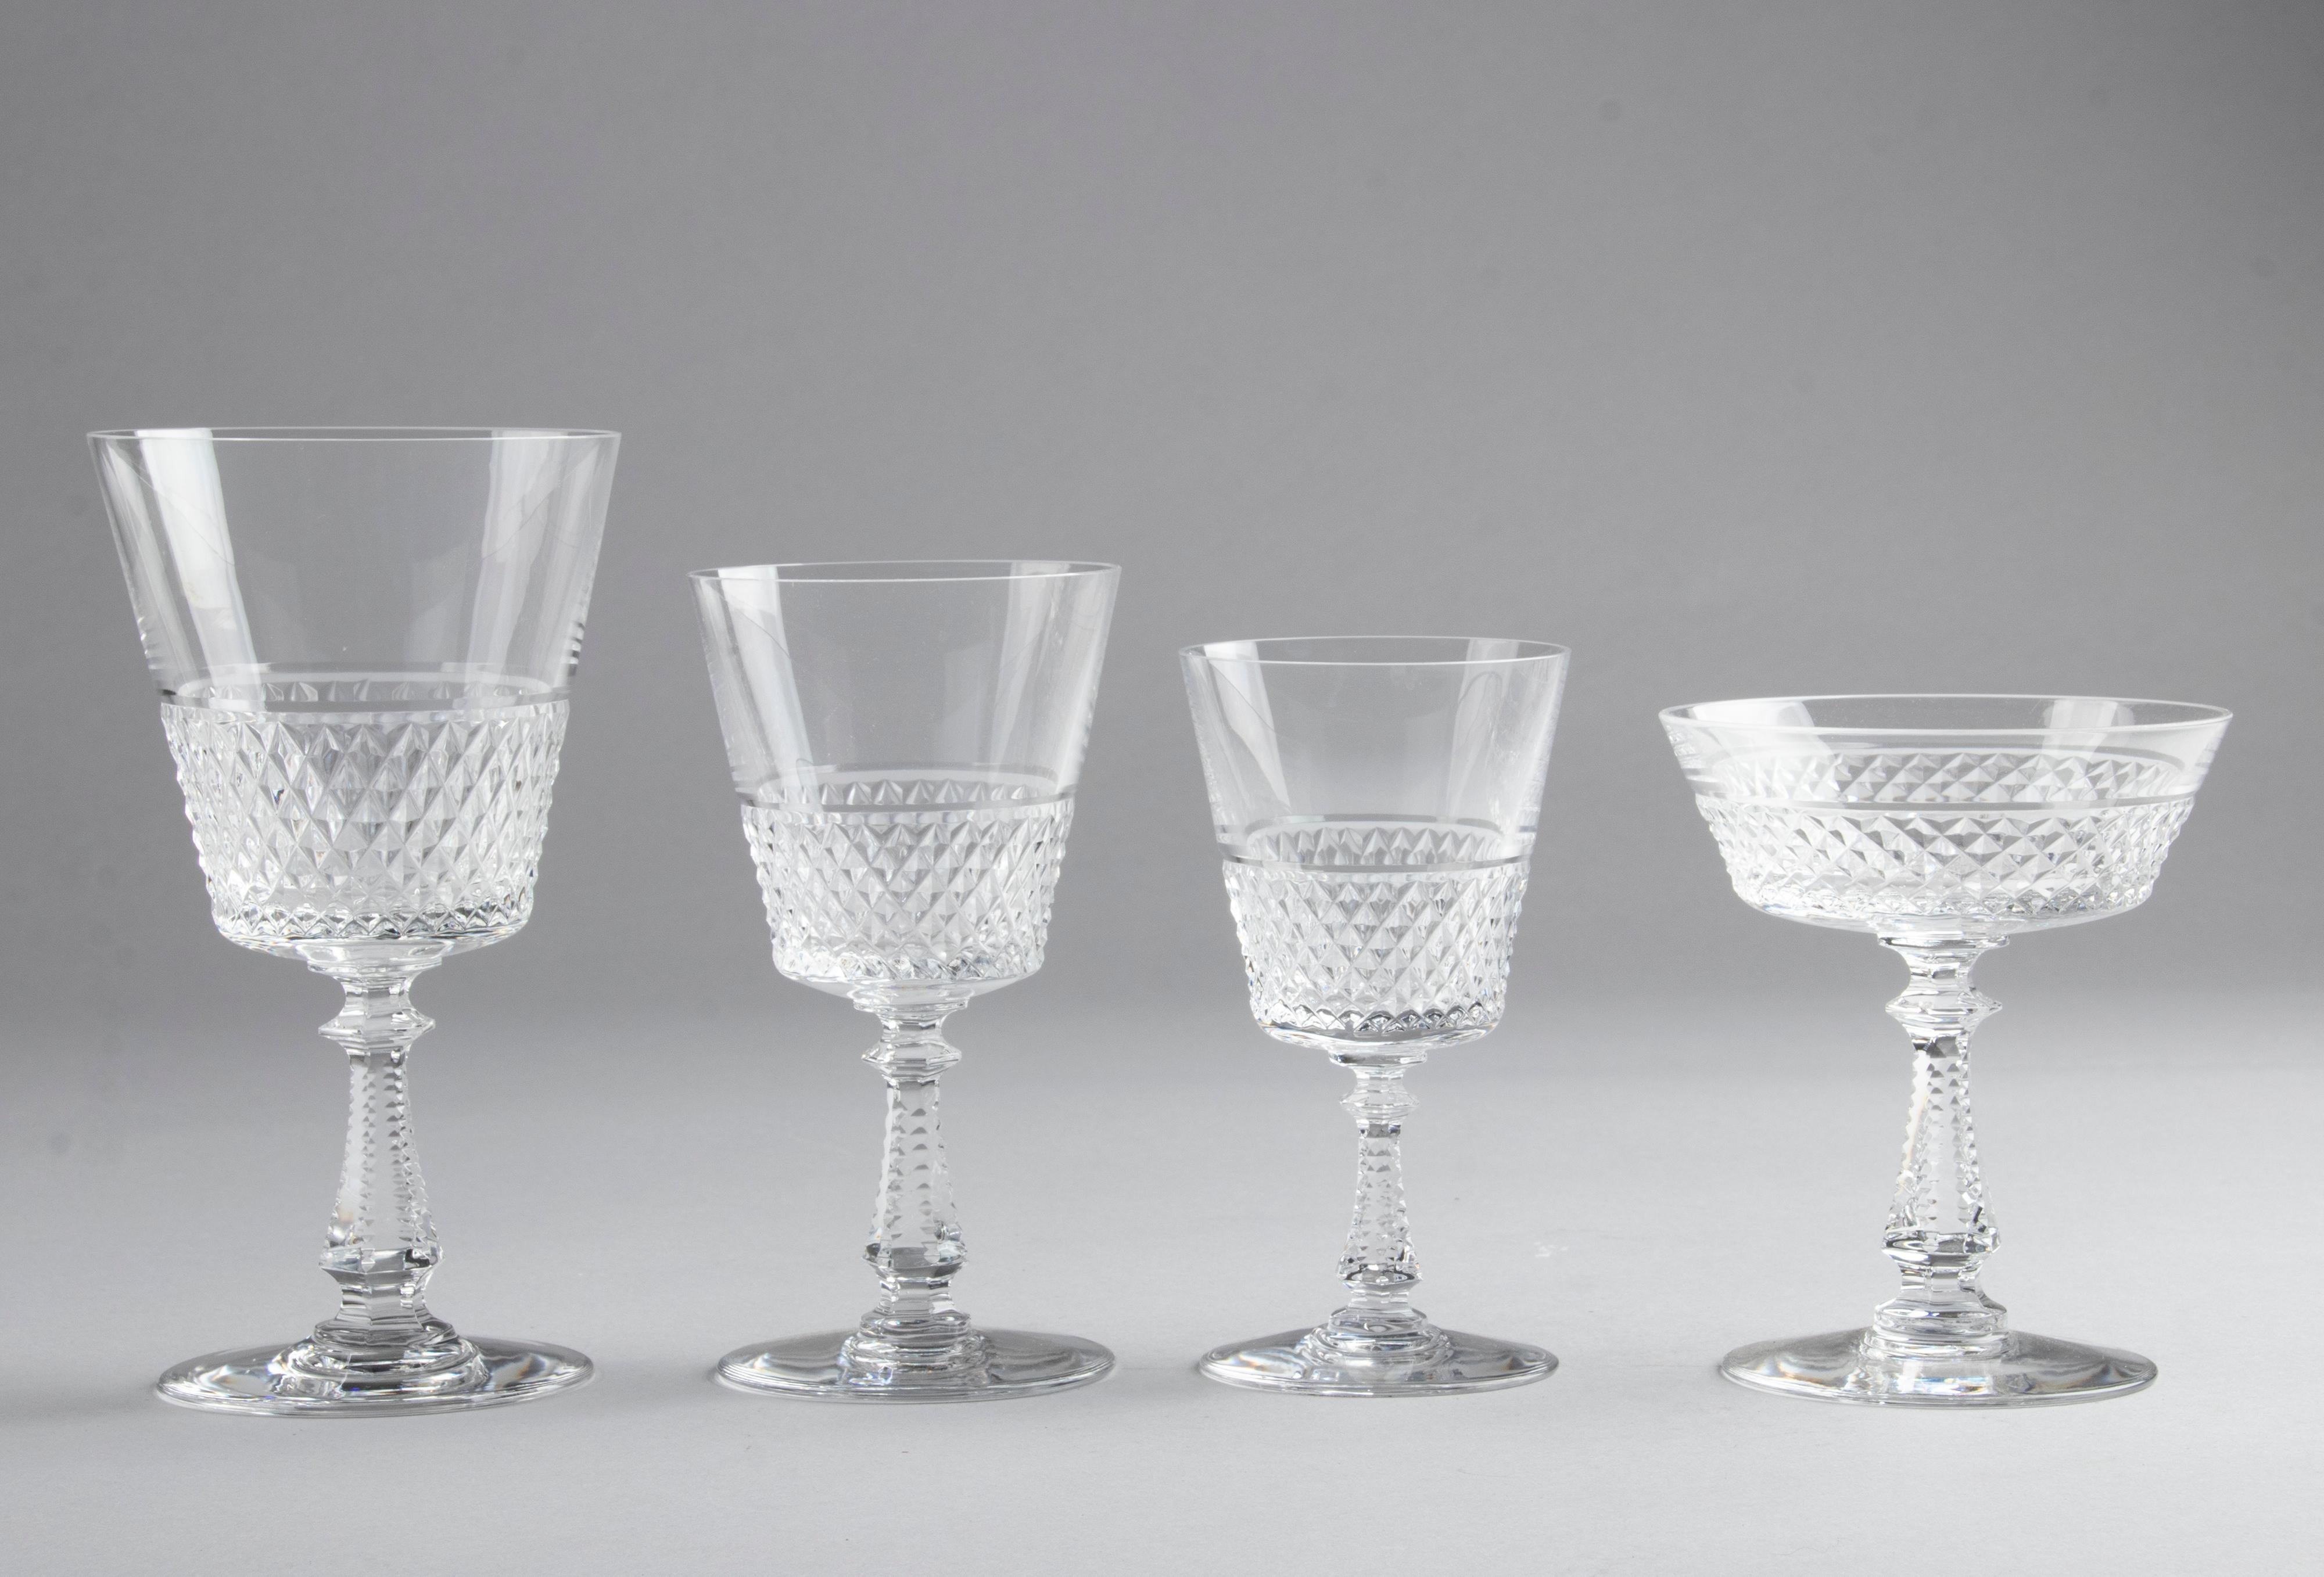 Belgian 24-Piece Crystal Set of Glasses by Val Saint Lambert model Heidelberg